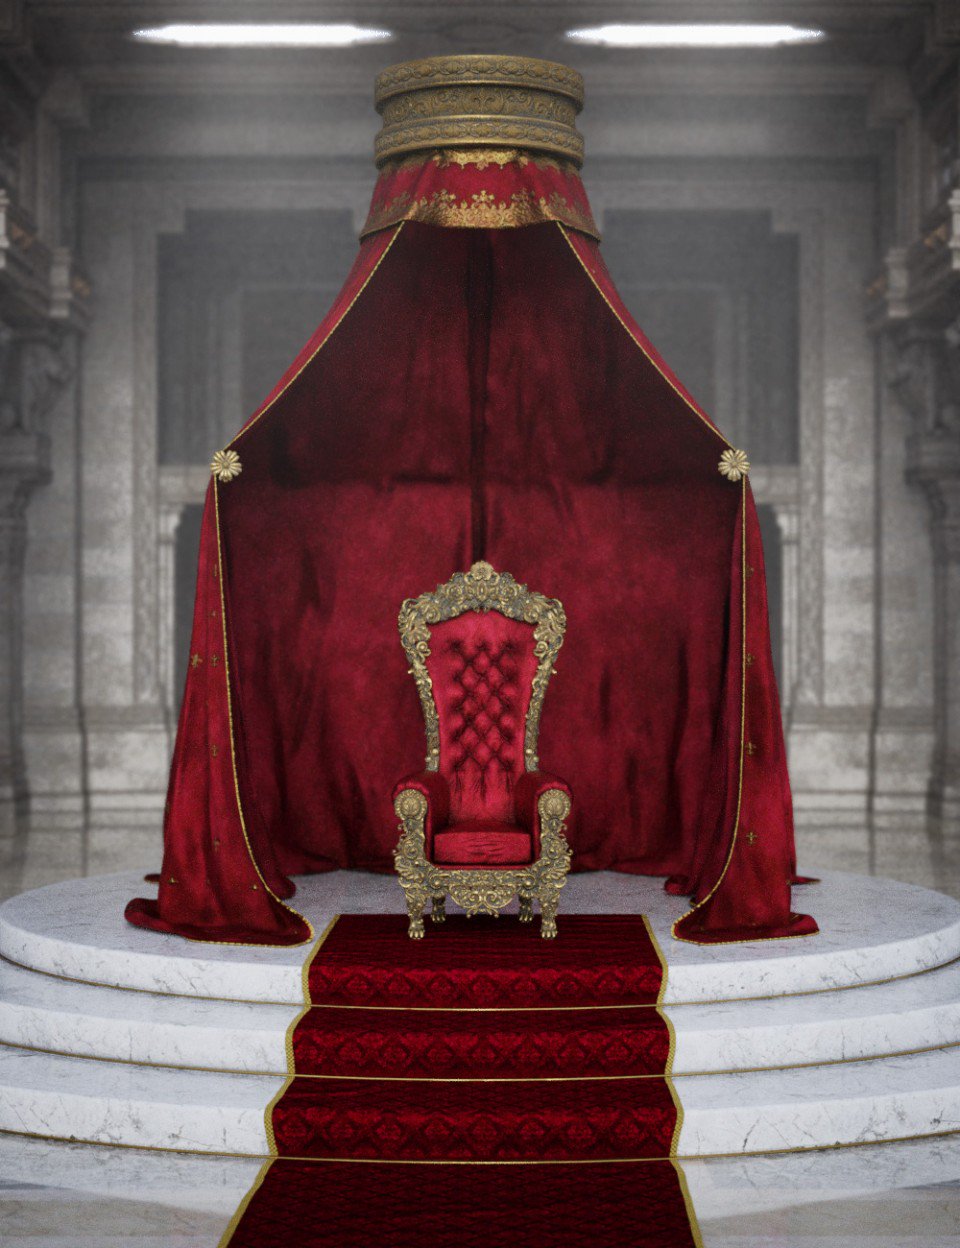 ロココ調の玉座 Royal Throne Dazカテゴリ一覧